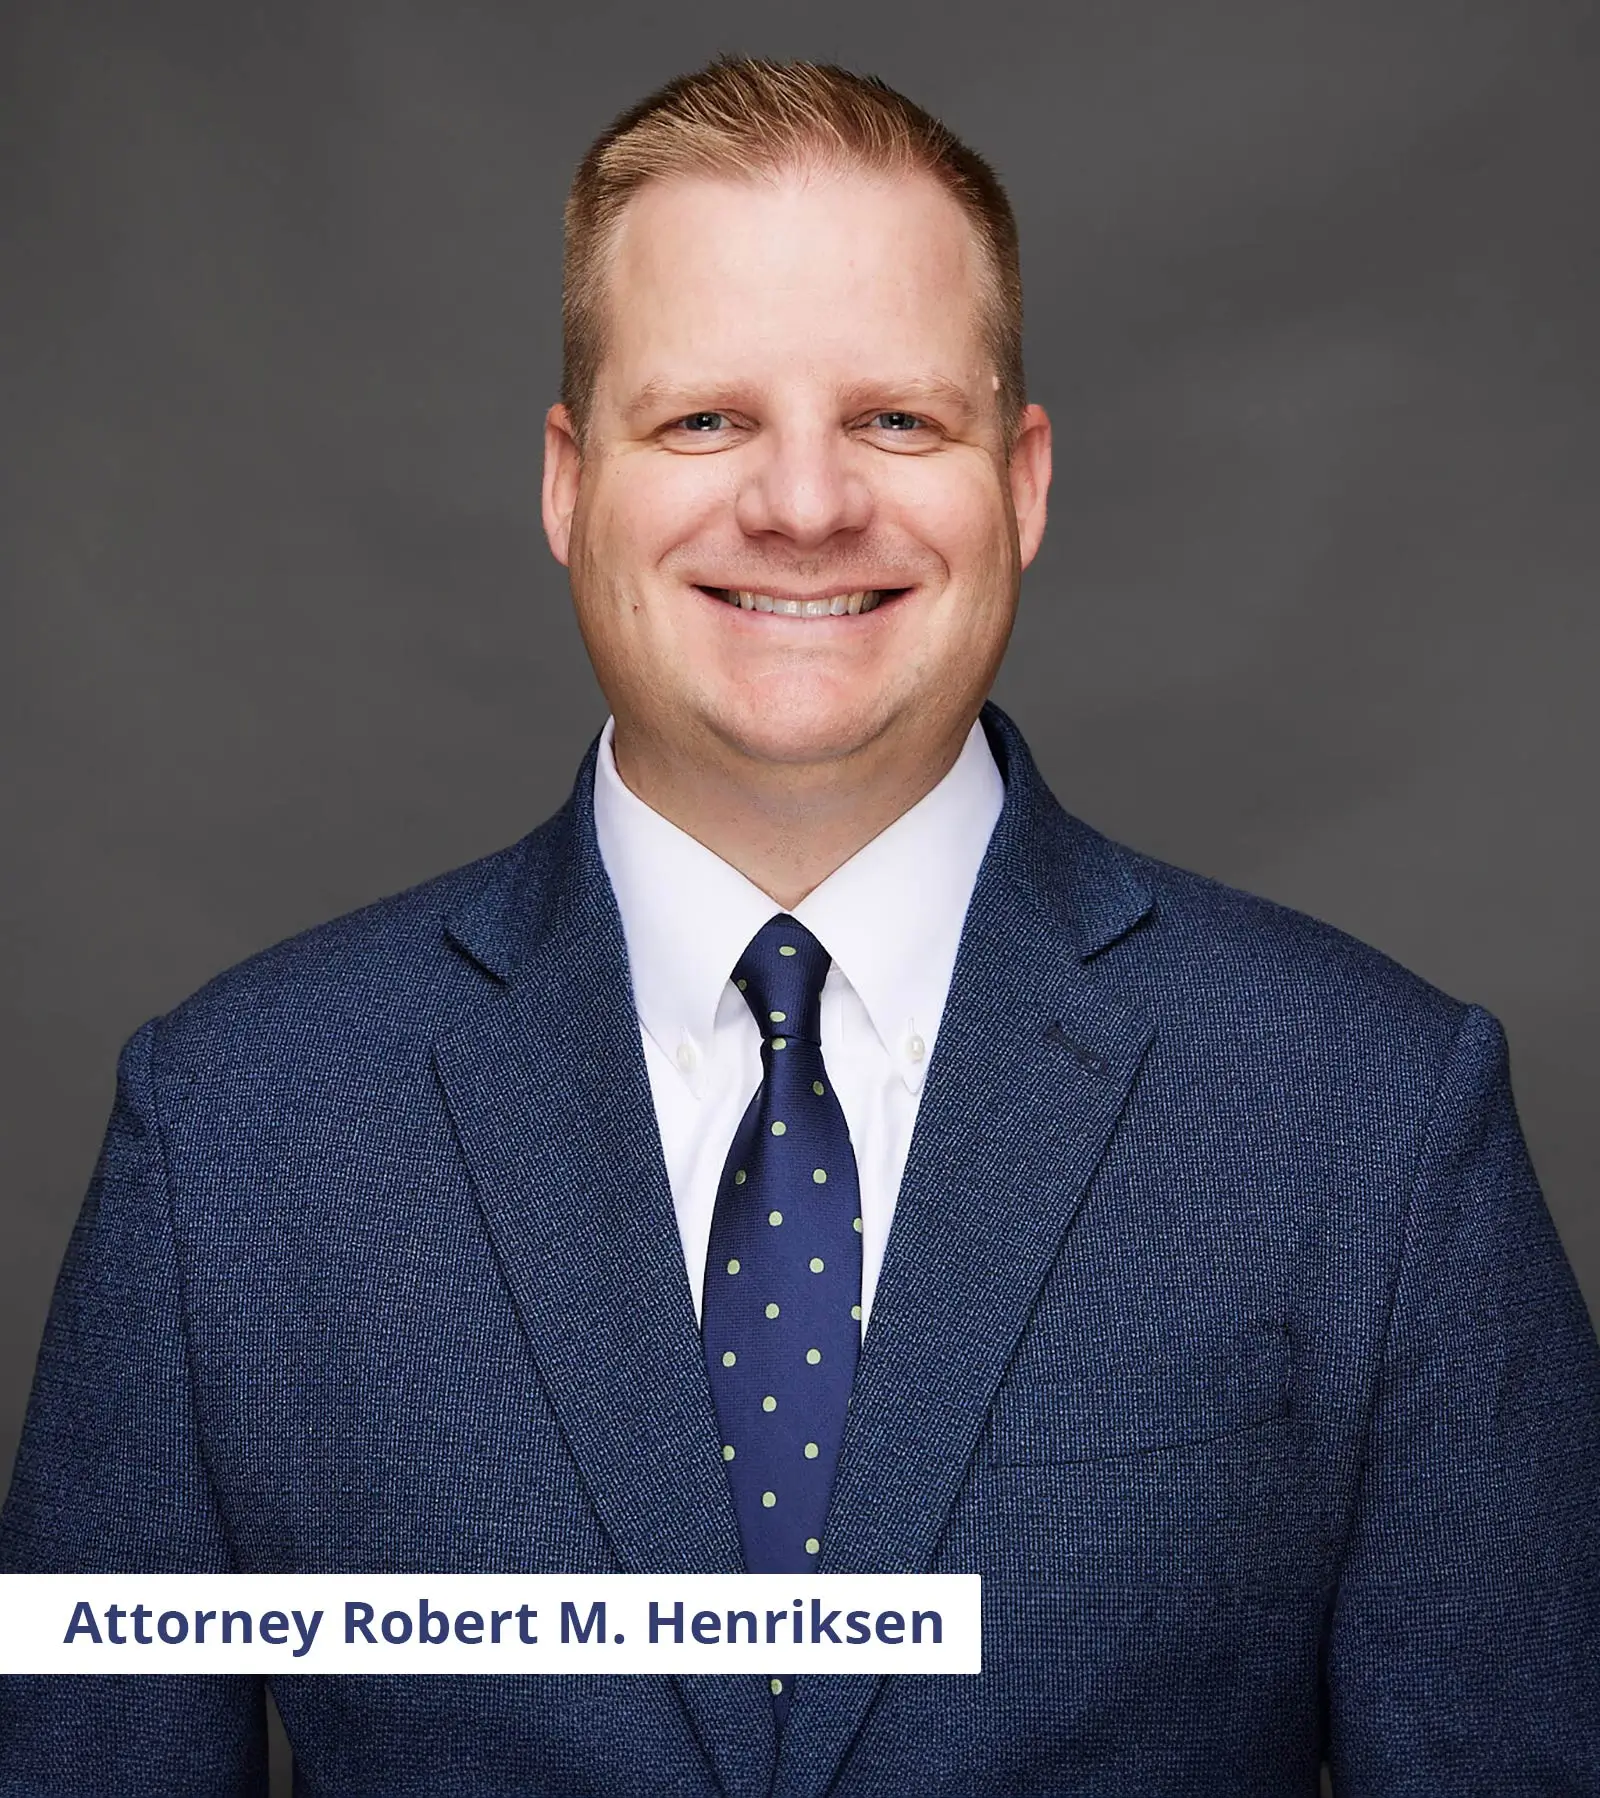 Wrongful Death Attorney Robert M. Henriksen